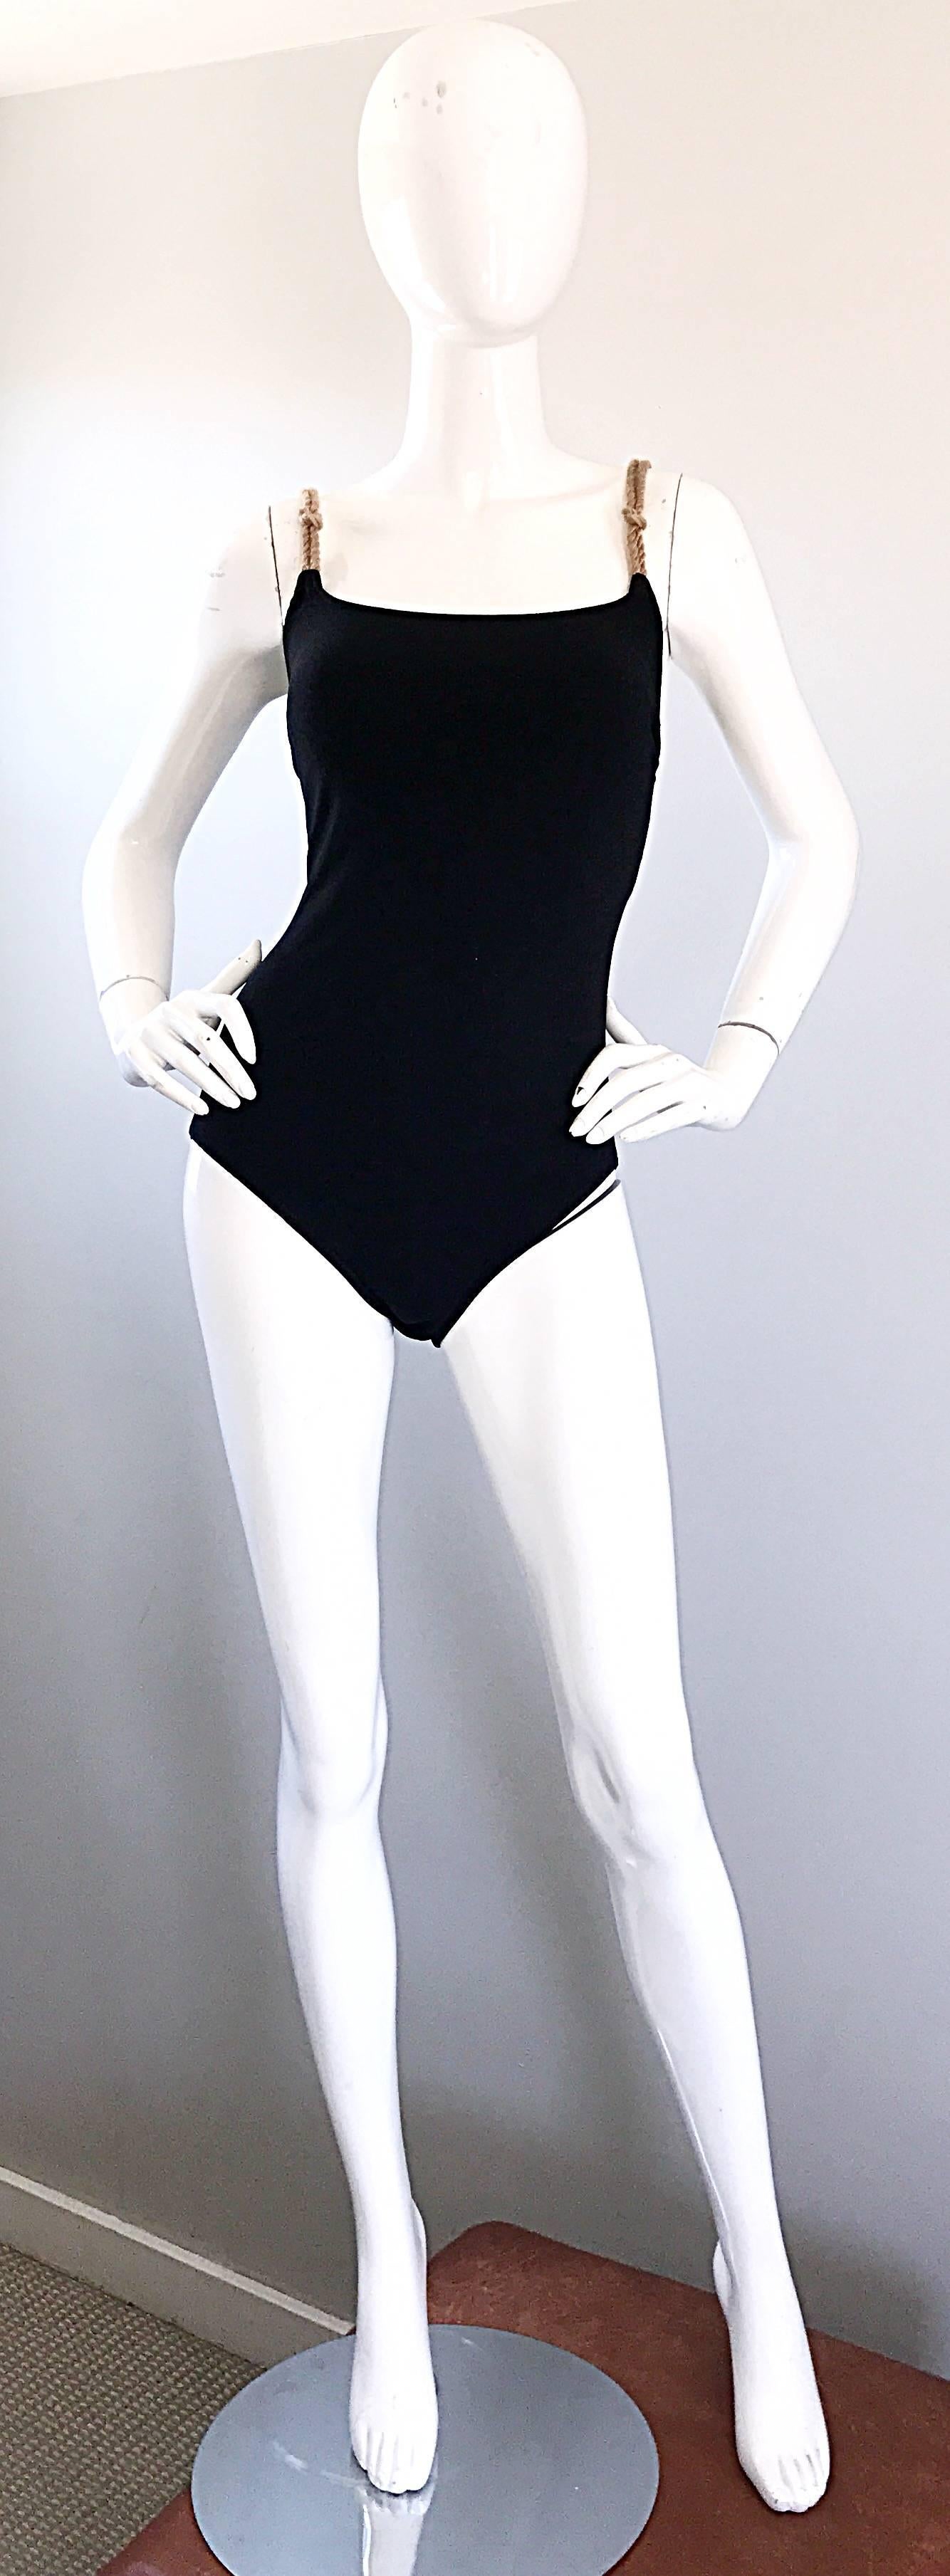 Schicker Vintage BILL BLASS schwarzer einteiliger Badeanzug oder Bodysuit! Mit schicken hellbraunen Seilträgern, die diesem figurbetonten Stück genau die richtige Portion Jazz verleihen! Ideal für den Pool oder den Strand, aber auch perfekt zu